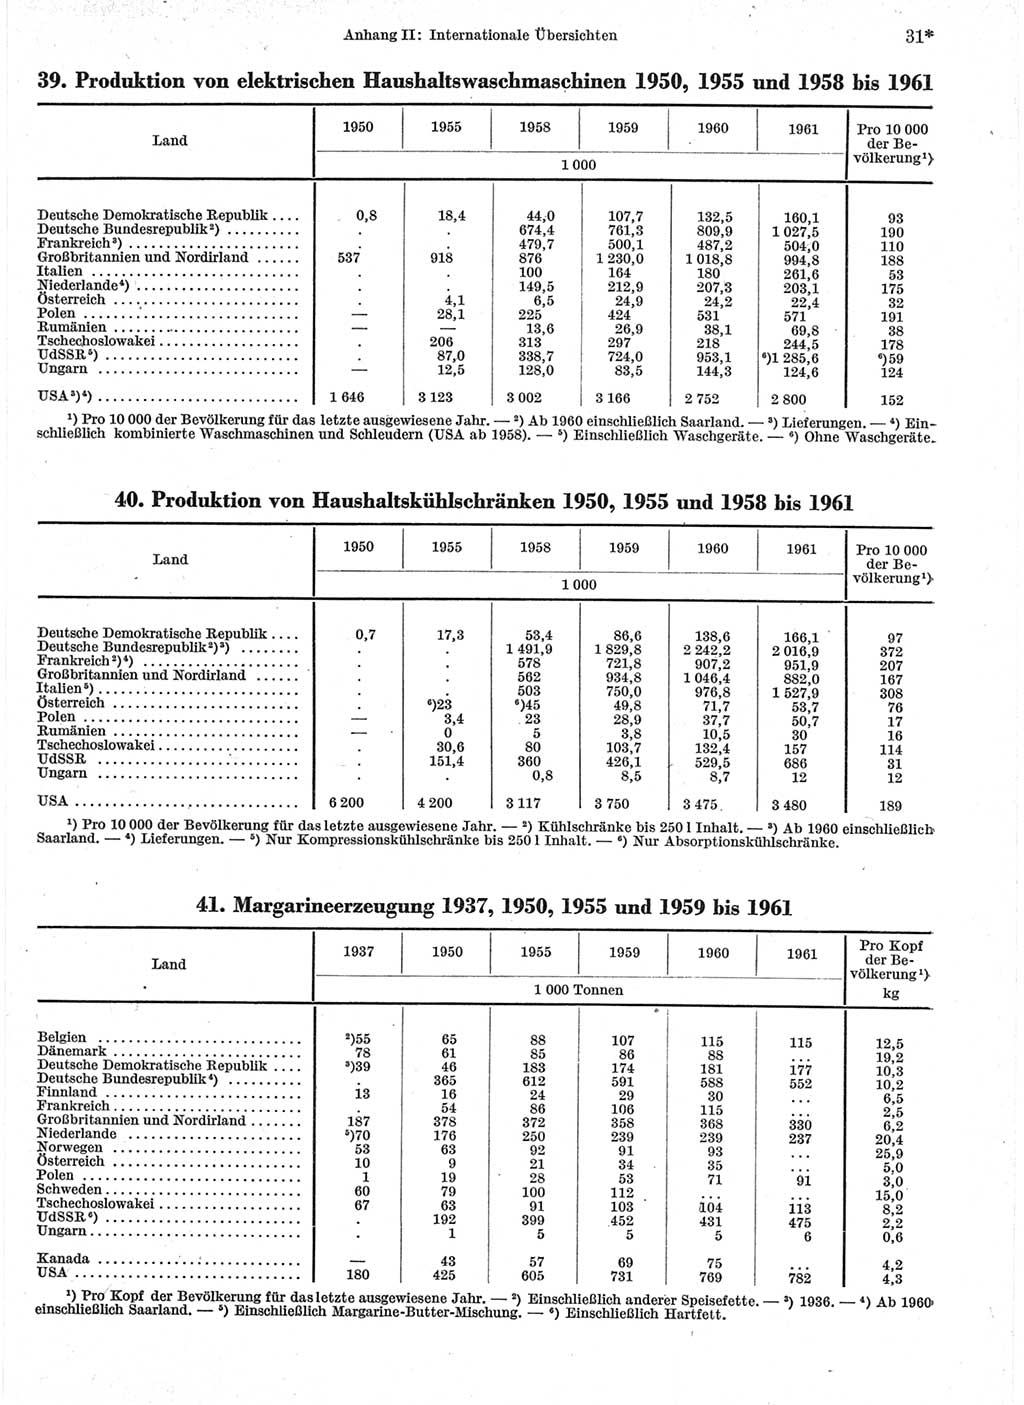 Statistisches Jahrbuch der Deutschen Demokratischen Republik (DDR) 1963, Seite 31 (Stat. Jb. DDR 1963, S. 31)